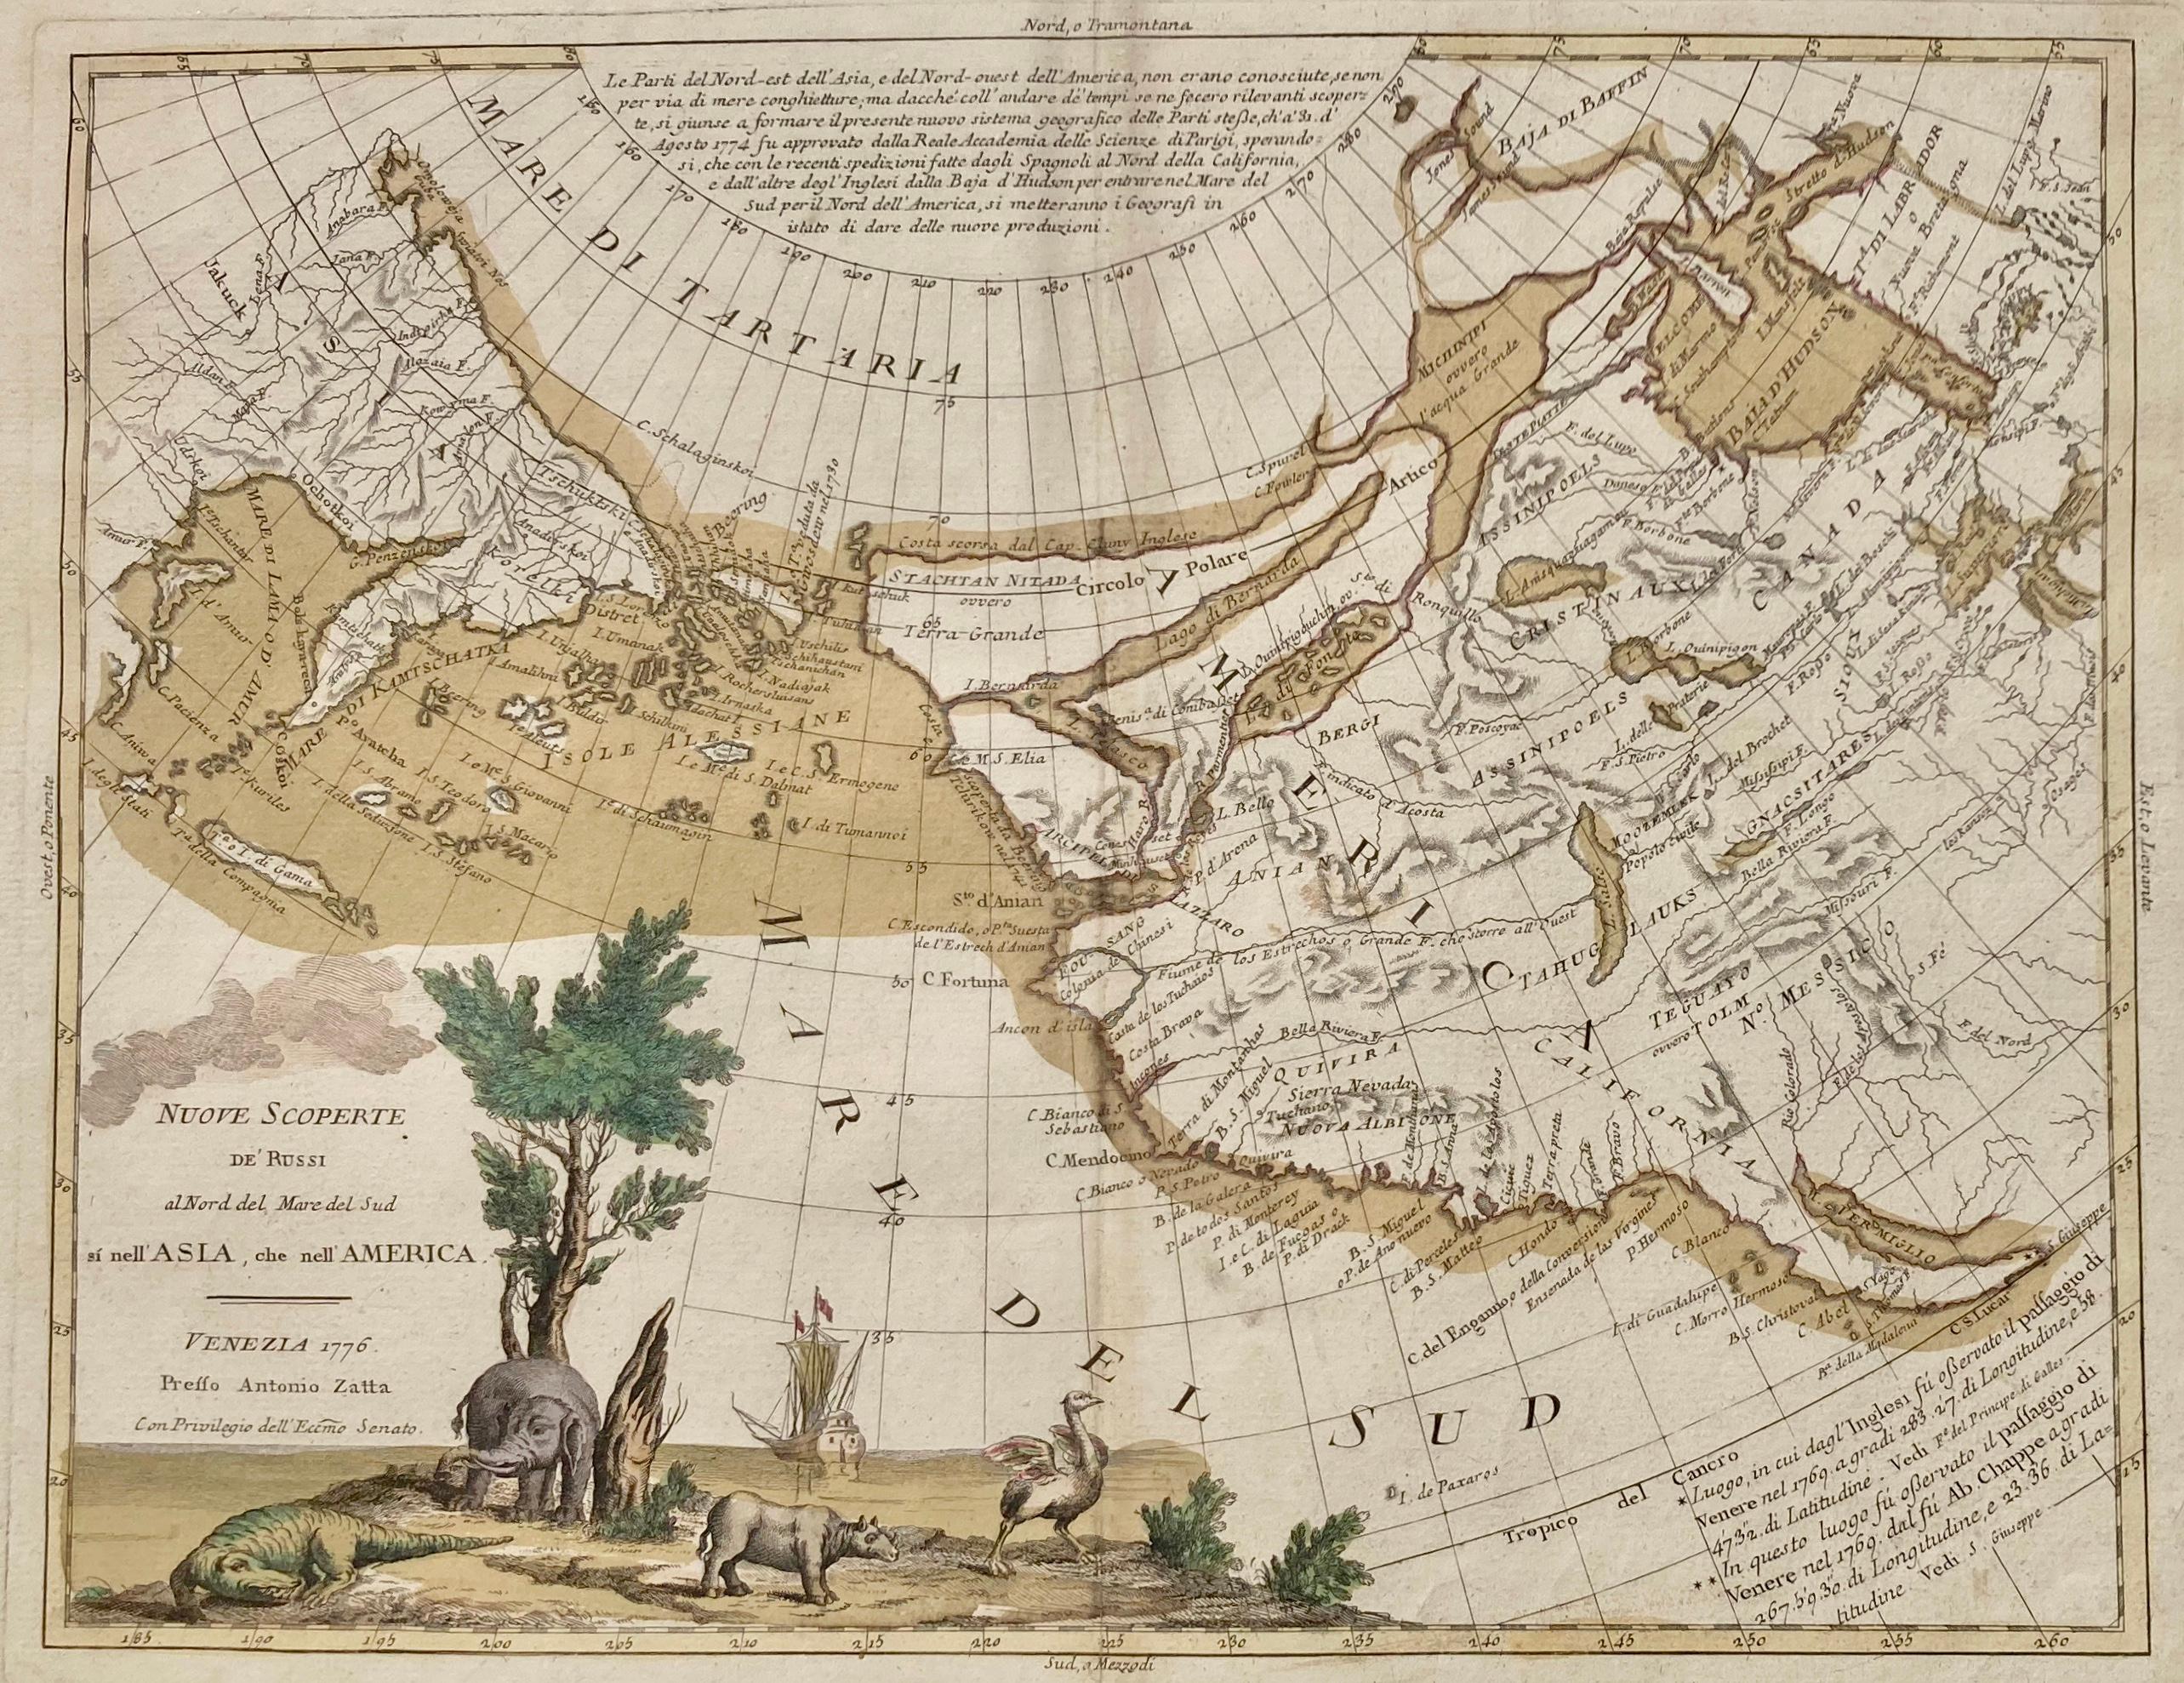 
ANTONIO ZATTA  (c.. 17.22 - 1802)
NUOVE SCOPERTE de' RUSSE al nord del mare del sud si nell' ASIA, che nell' AMERICA
(Wagner 654. Armstrong, From Sea Unto Sea, 32. Falk, Alaskan Maps, 1776-2. Kershaw Vol. IV 1223 & Plate 962). Engraving with early